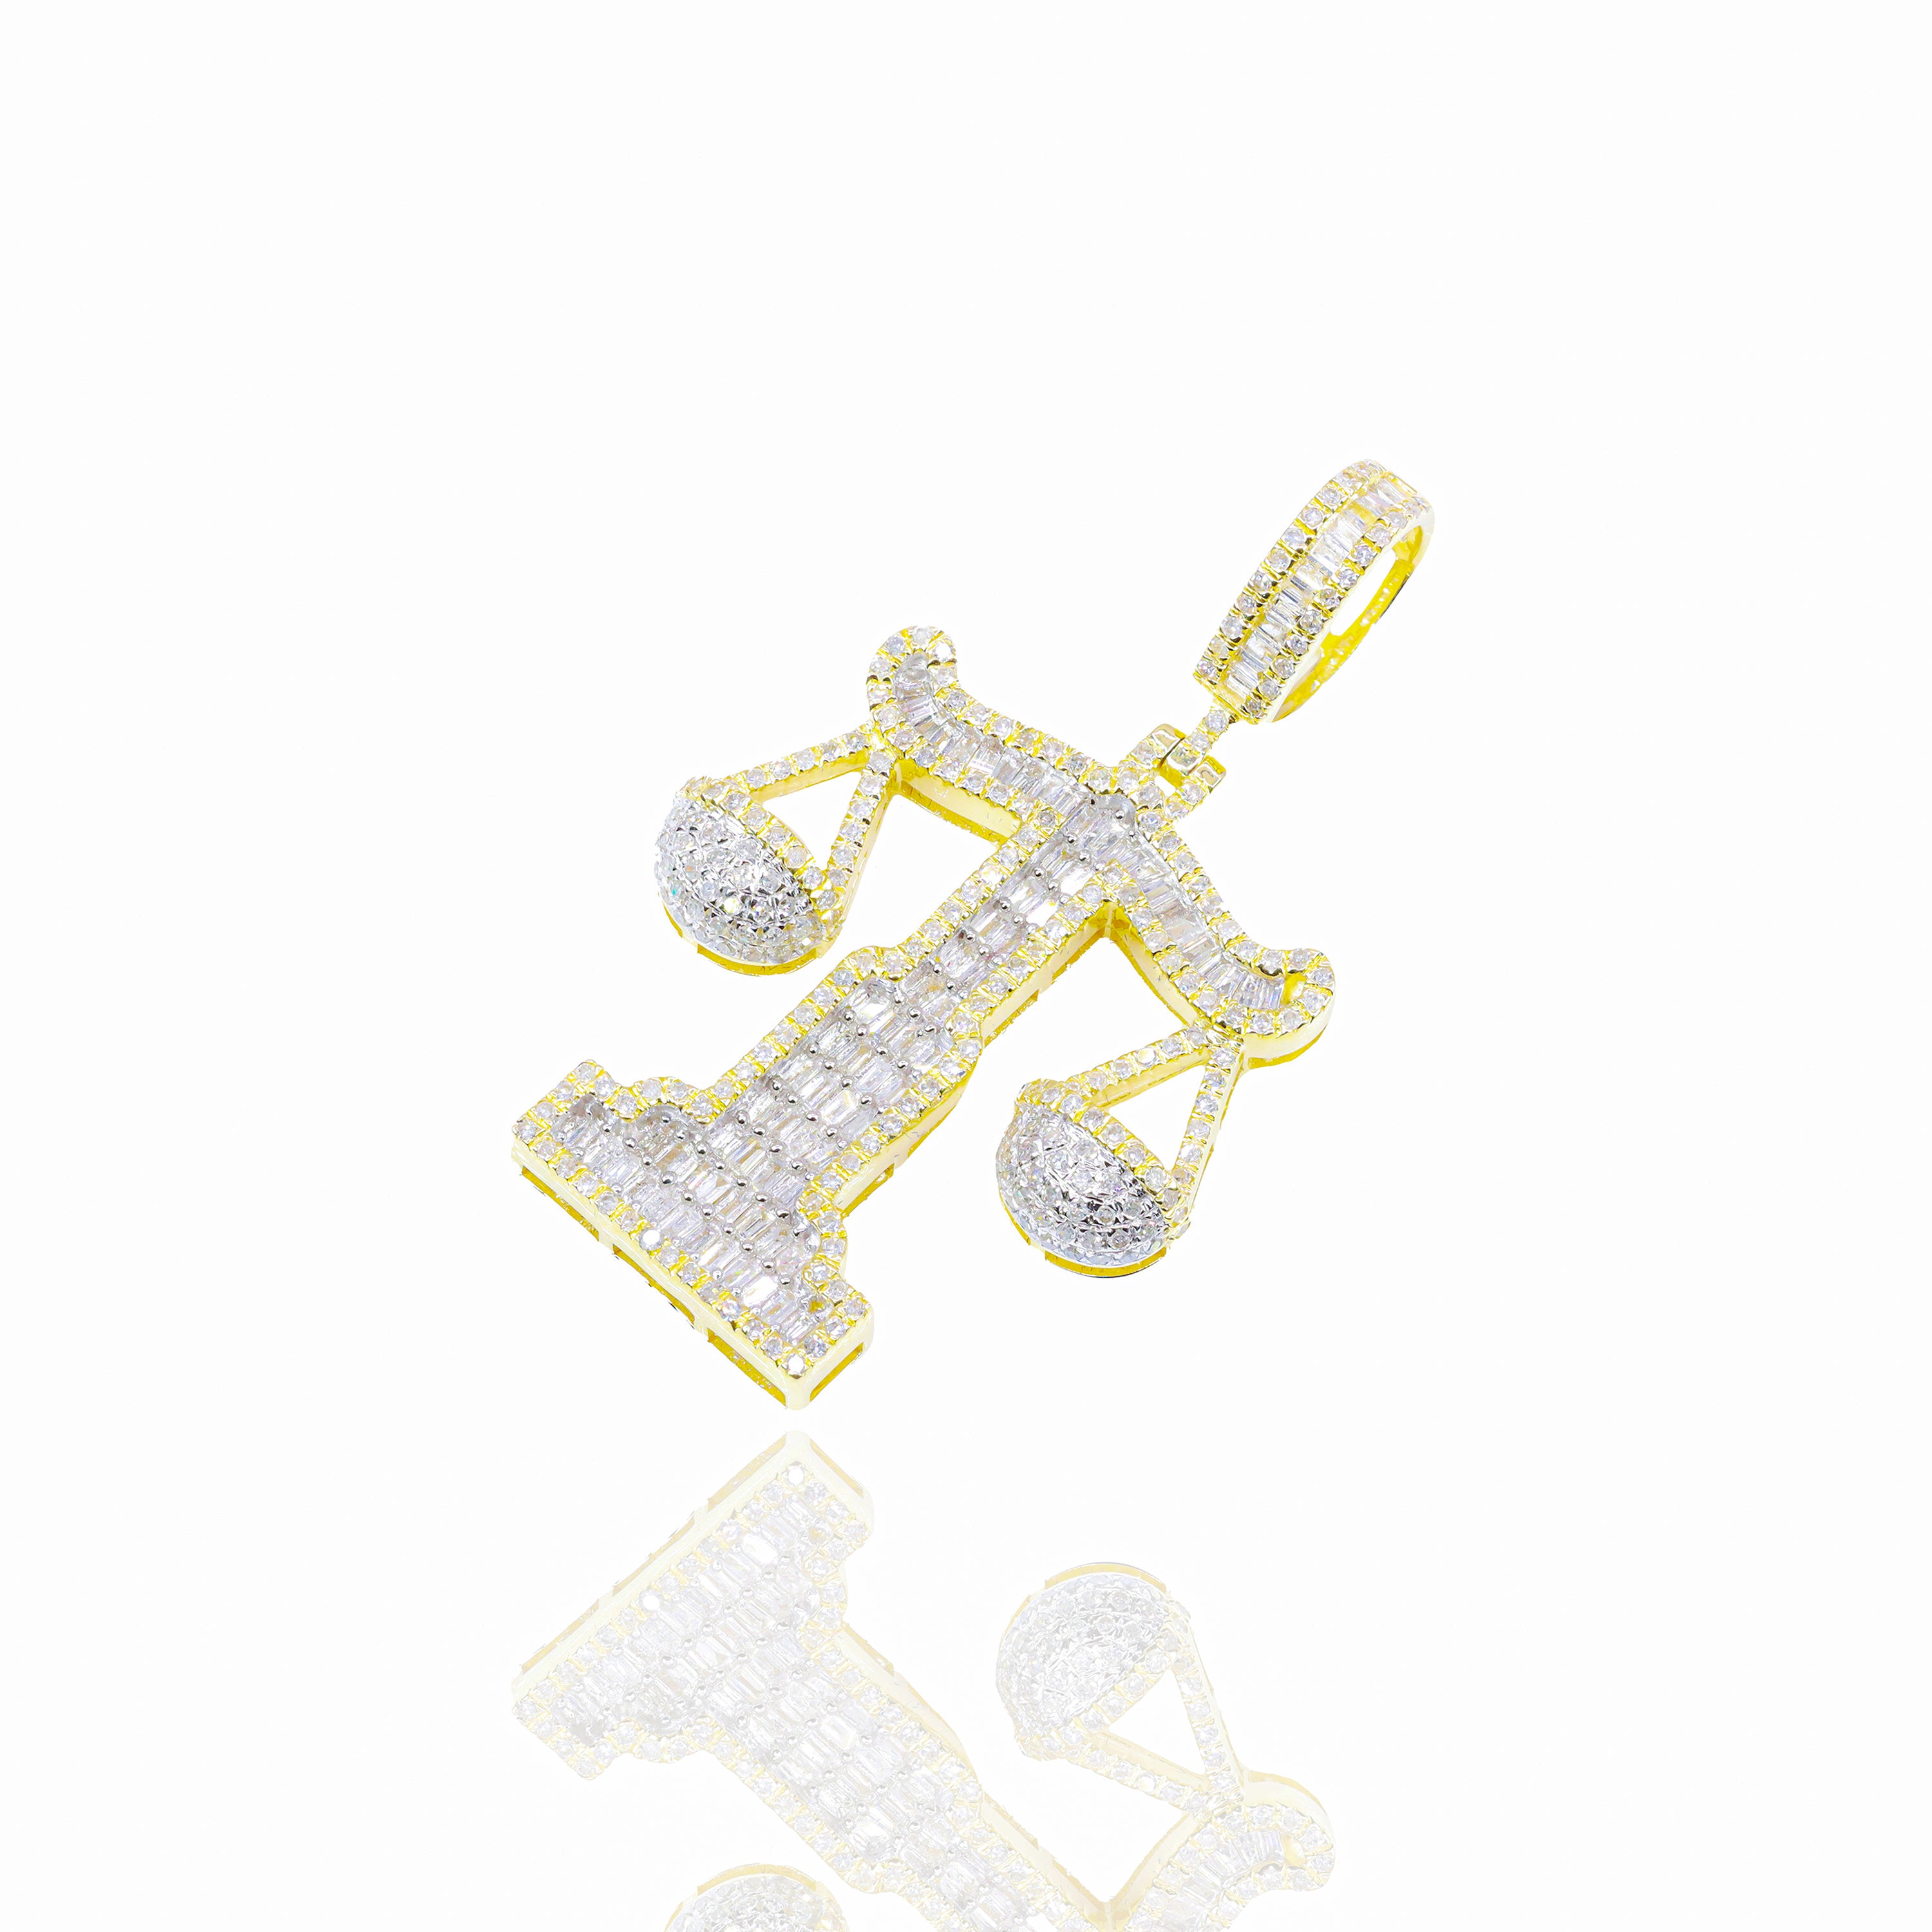 Baguette Diamond Scale Diamond Pendant